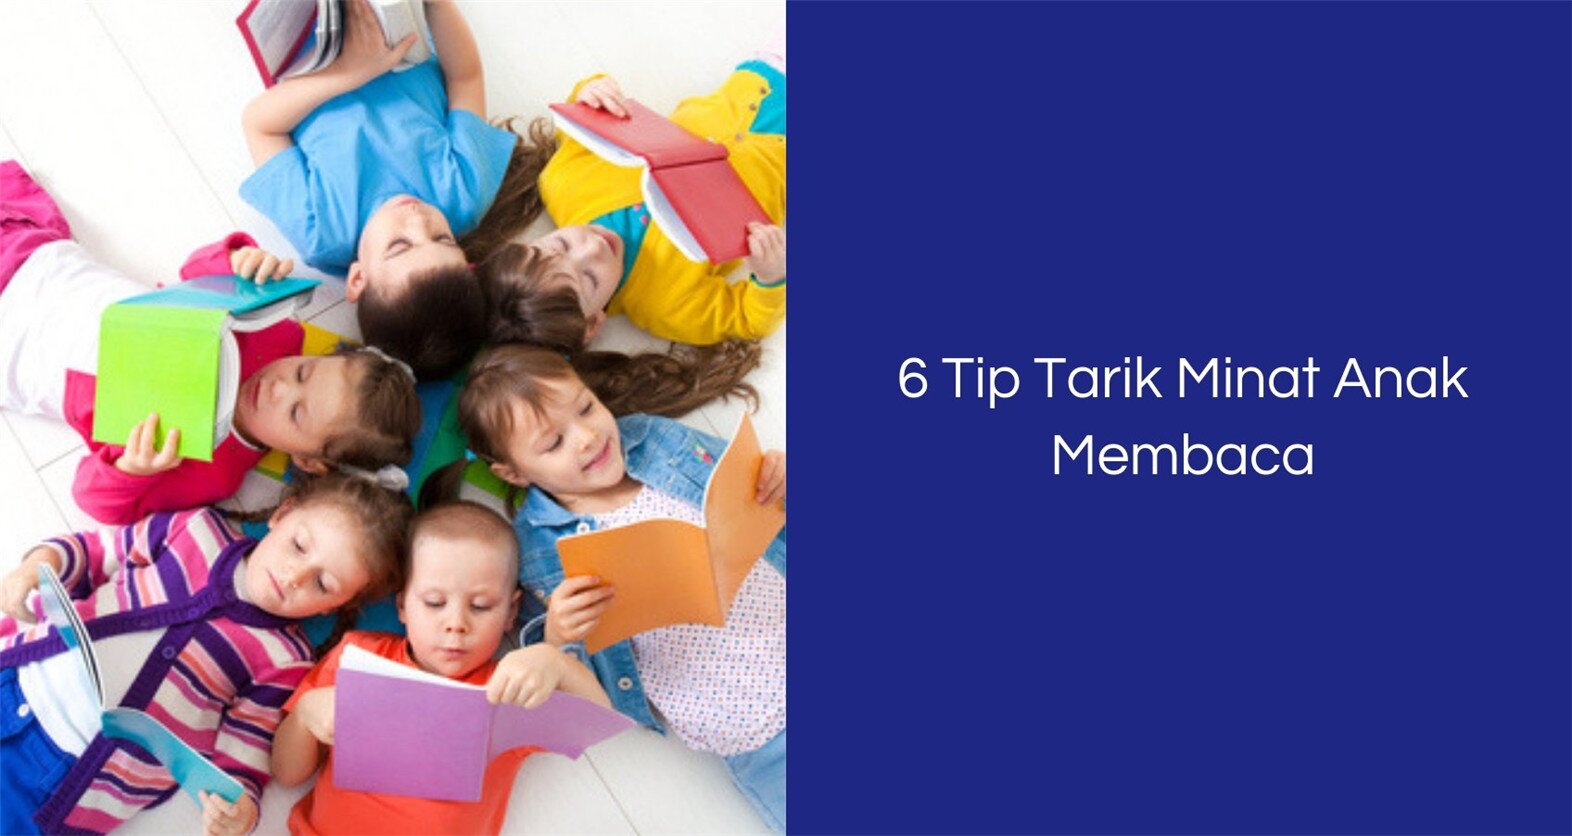 6 Tip Untuk Tarik Minat Anak Membaca